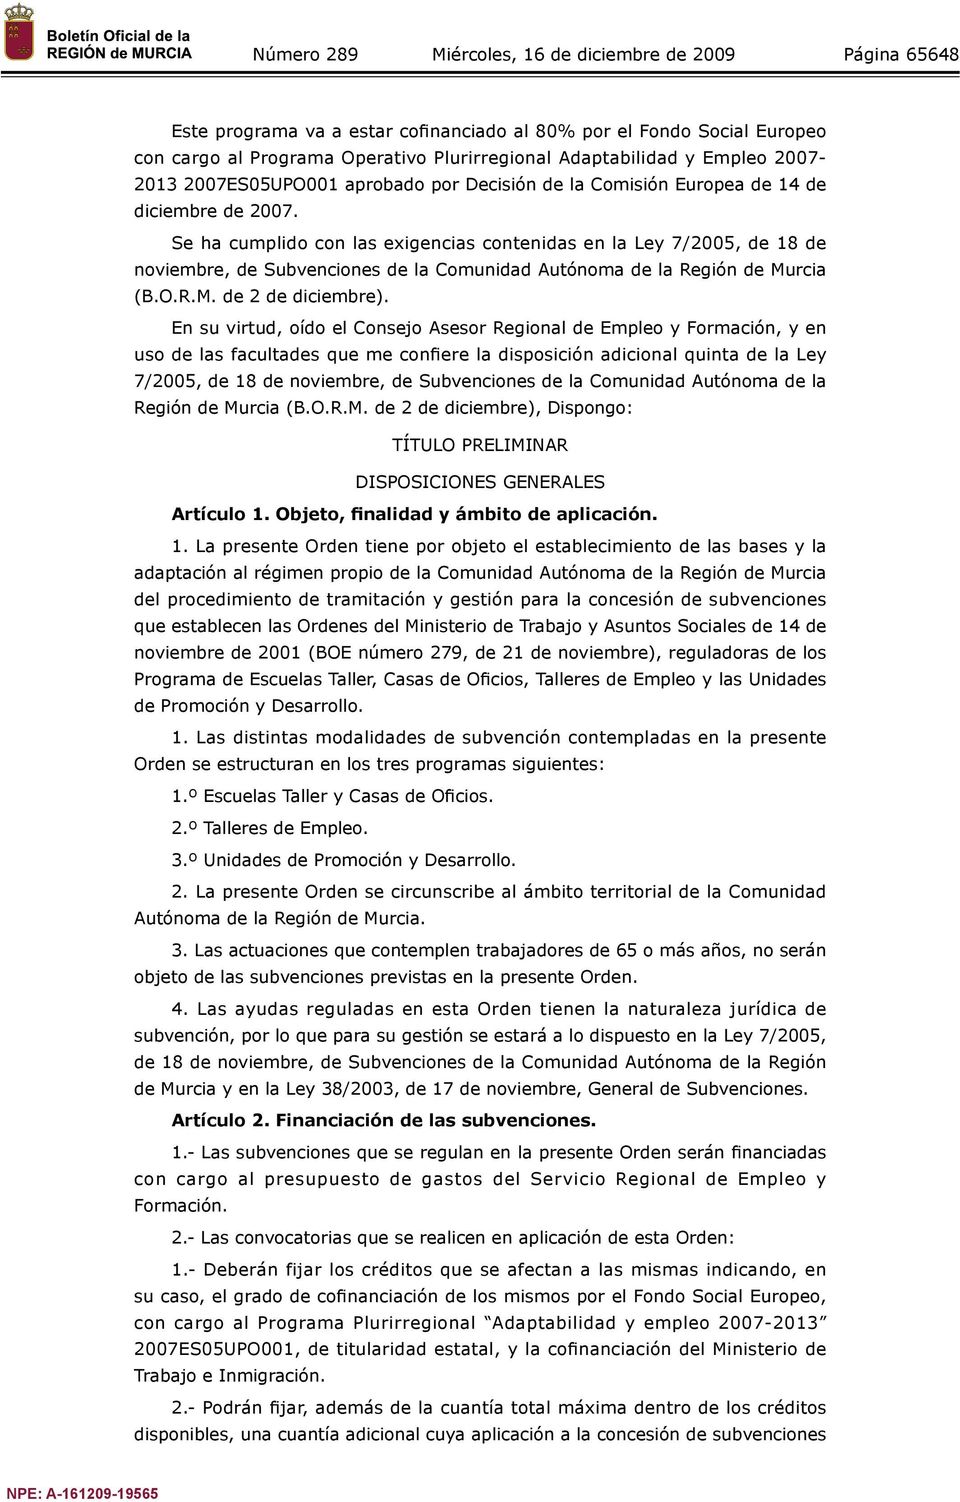 Se ha cumplido con las exigencias contenidas en la Ley 7/2005, de 18 de noviembre, de Subvenciones de la Comunidad Autónoma de la Región de Murcia (B.O.R.M. de 2 de diciembre).